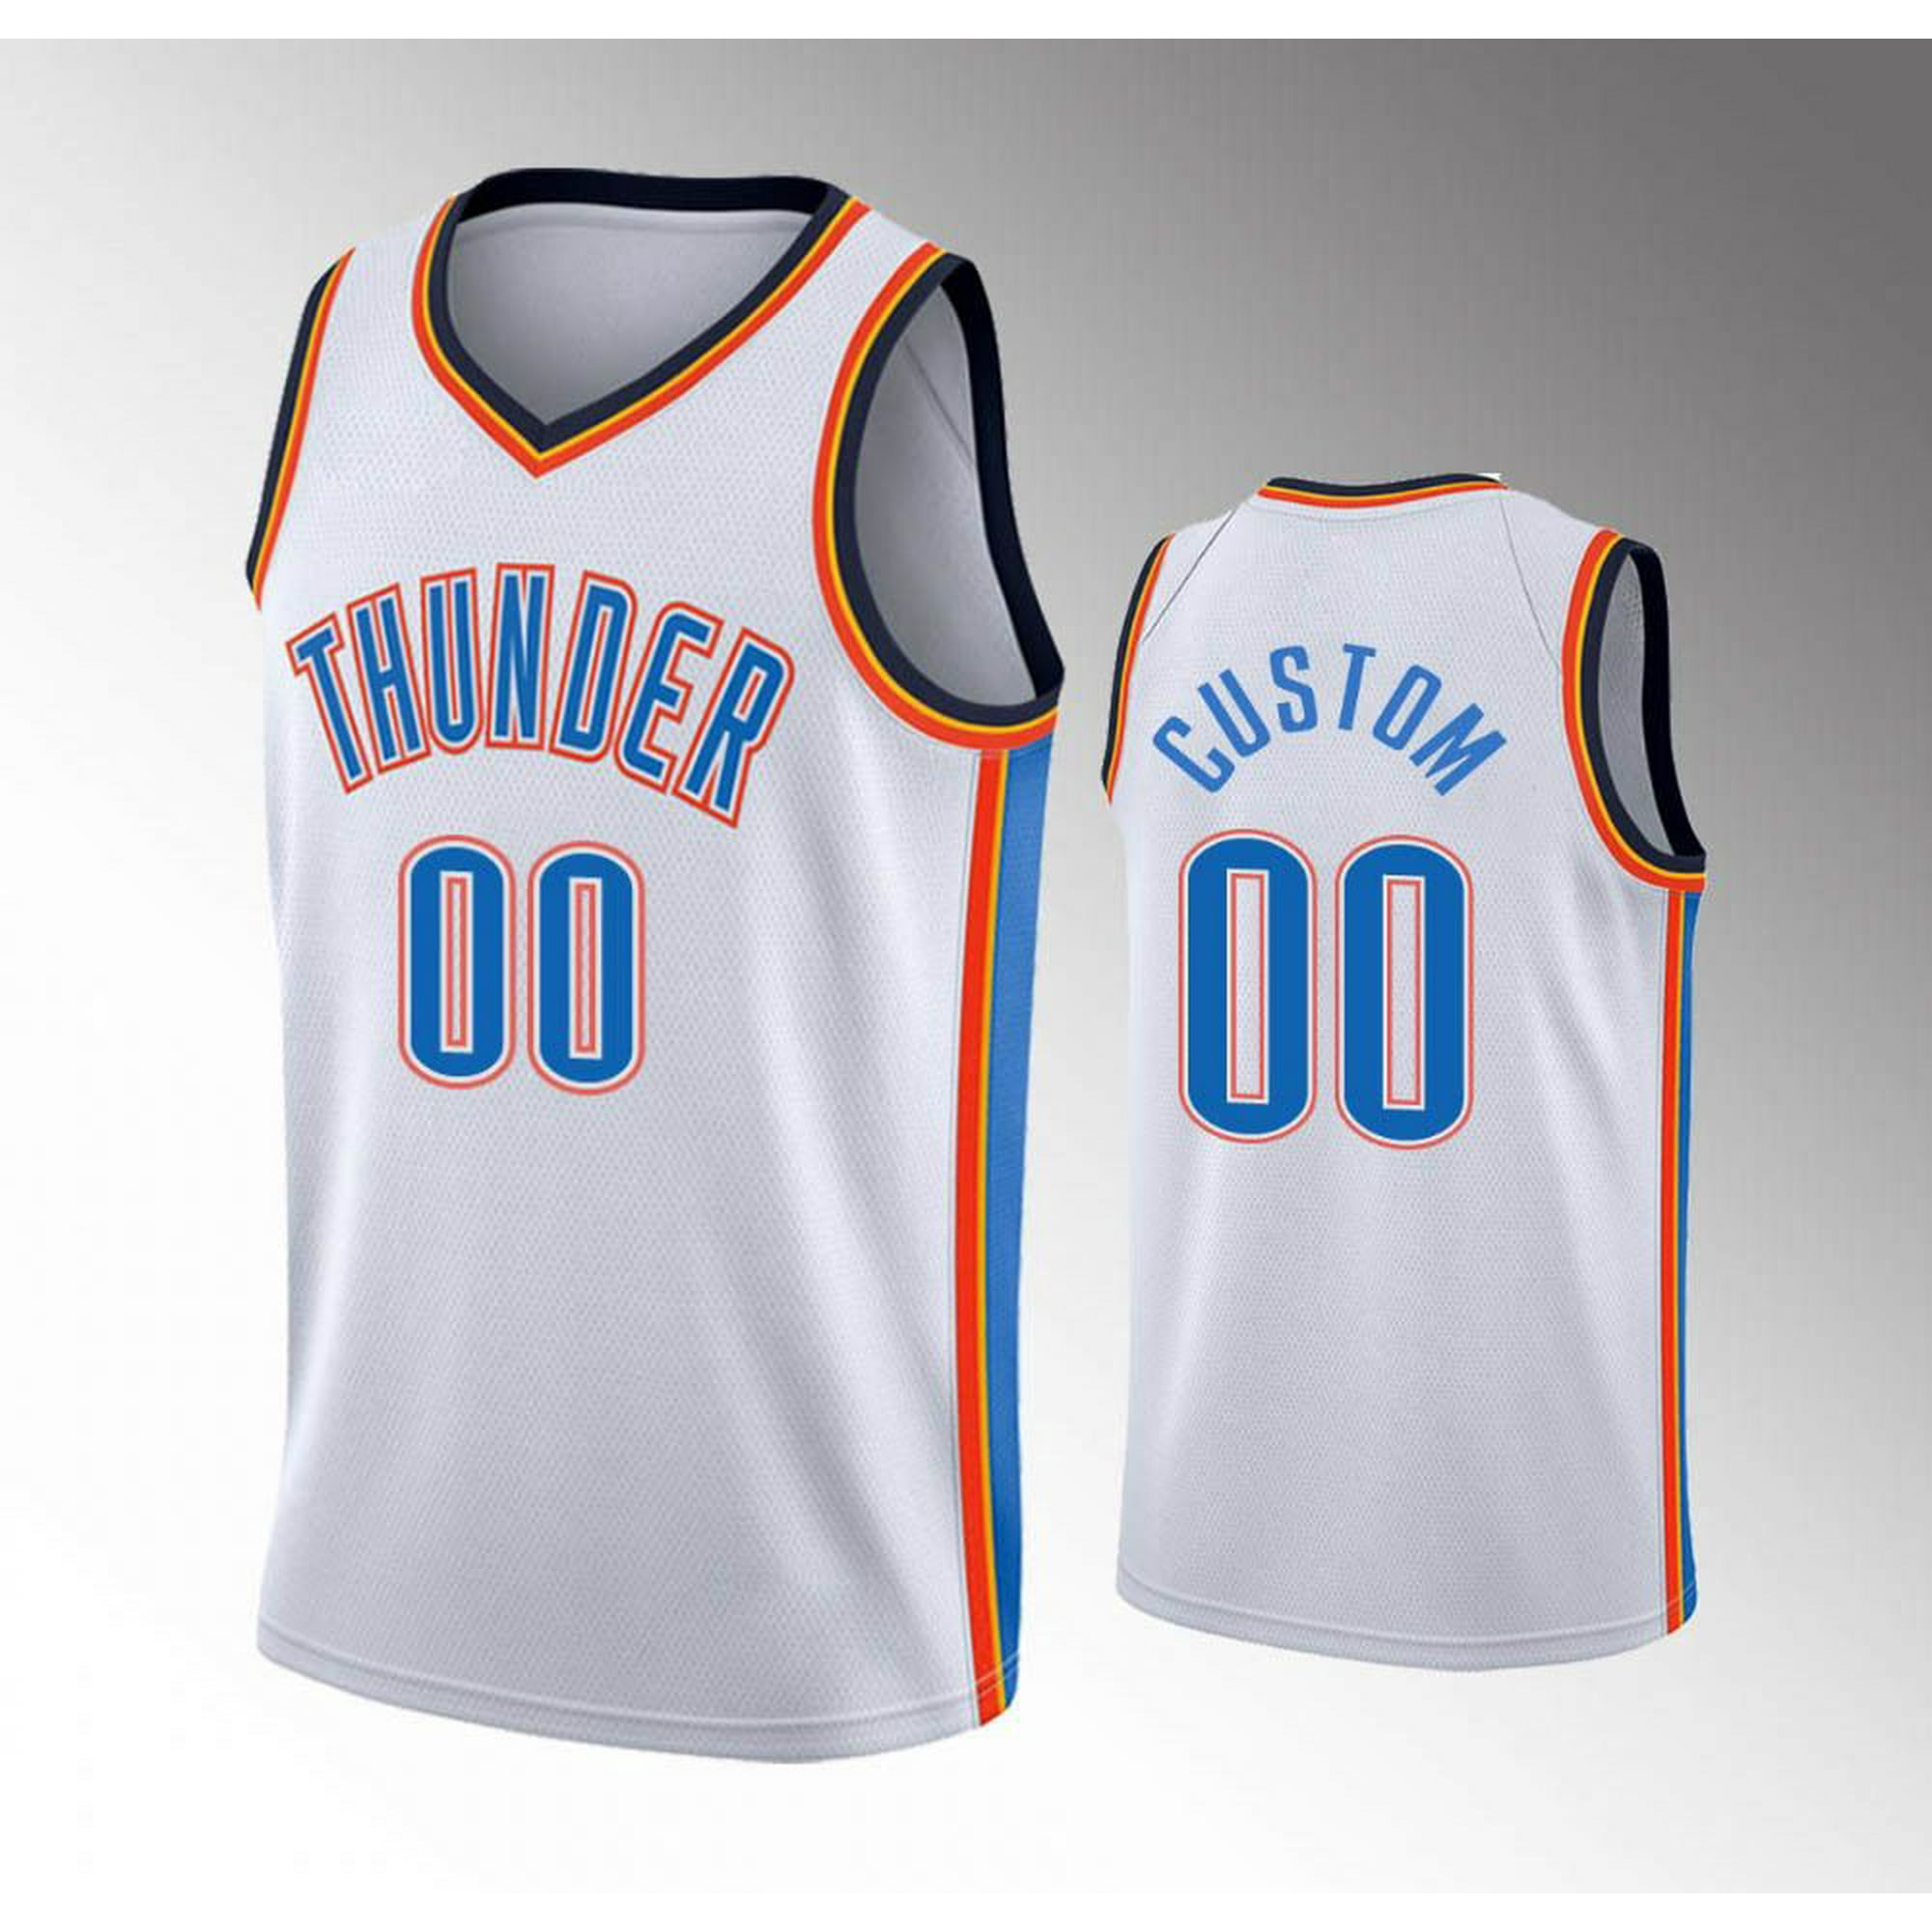 Oklahoma City Thunder Jerseys, Thunder Jersey, Oklahoma City